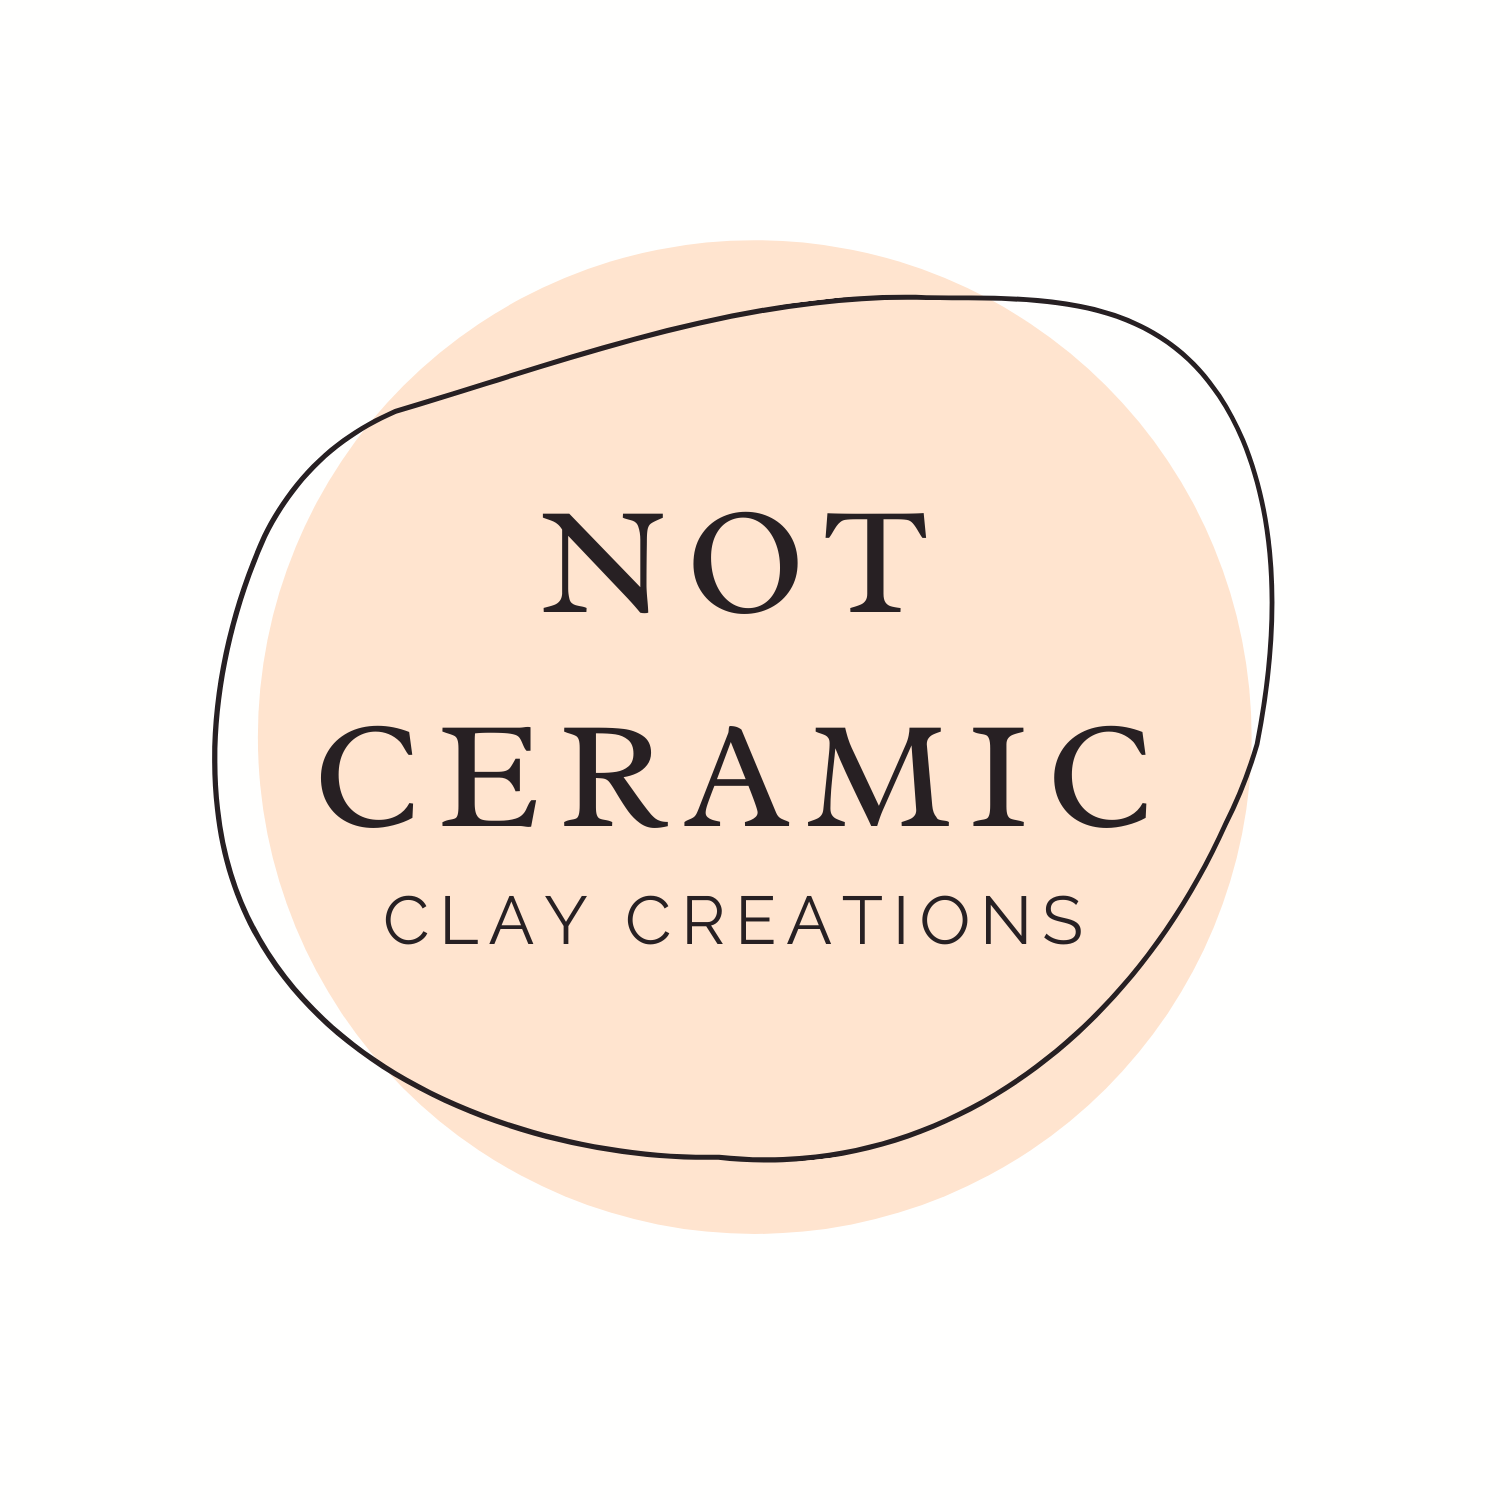 Not Ceramic